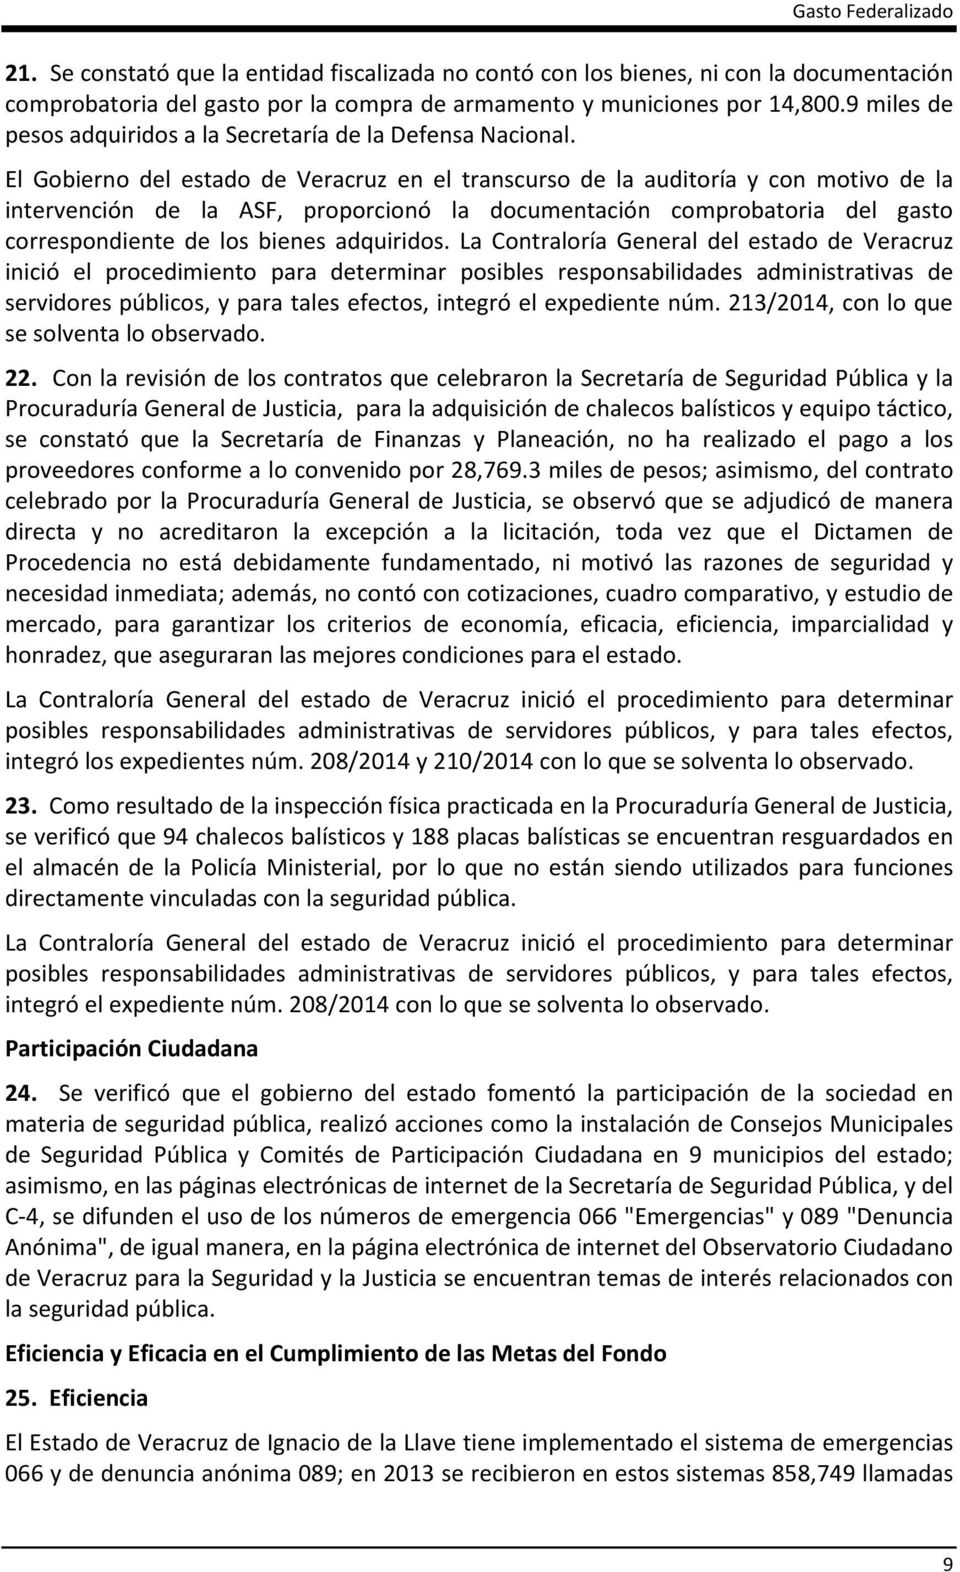 El Gobierno del estado de Veracruz en el transcurso de la auditoría y con motivo de la intervención de la ASF, proporcionó la documentación comprobatoria del gasto correspondiente de los bienes